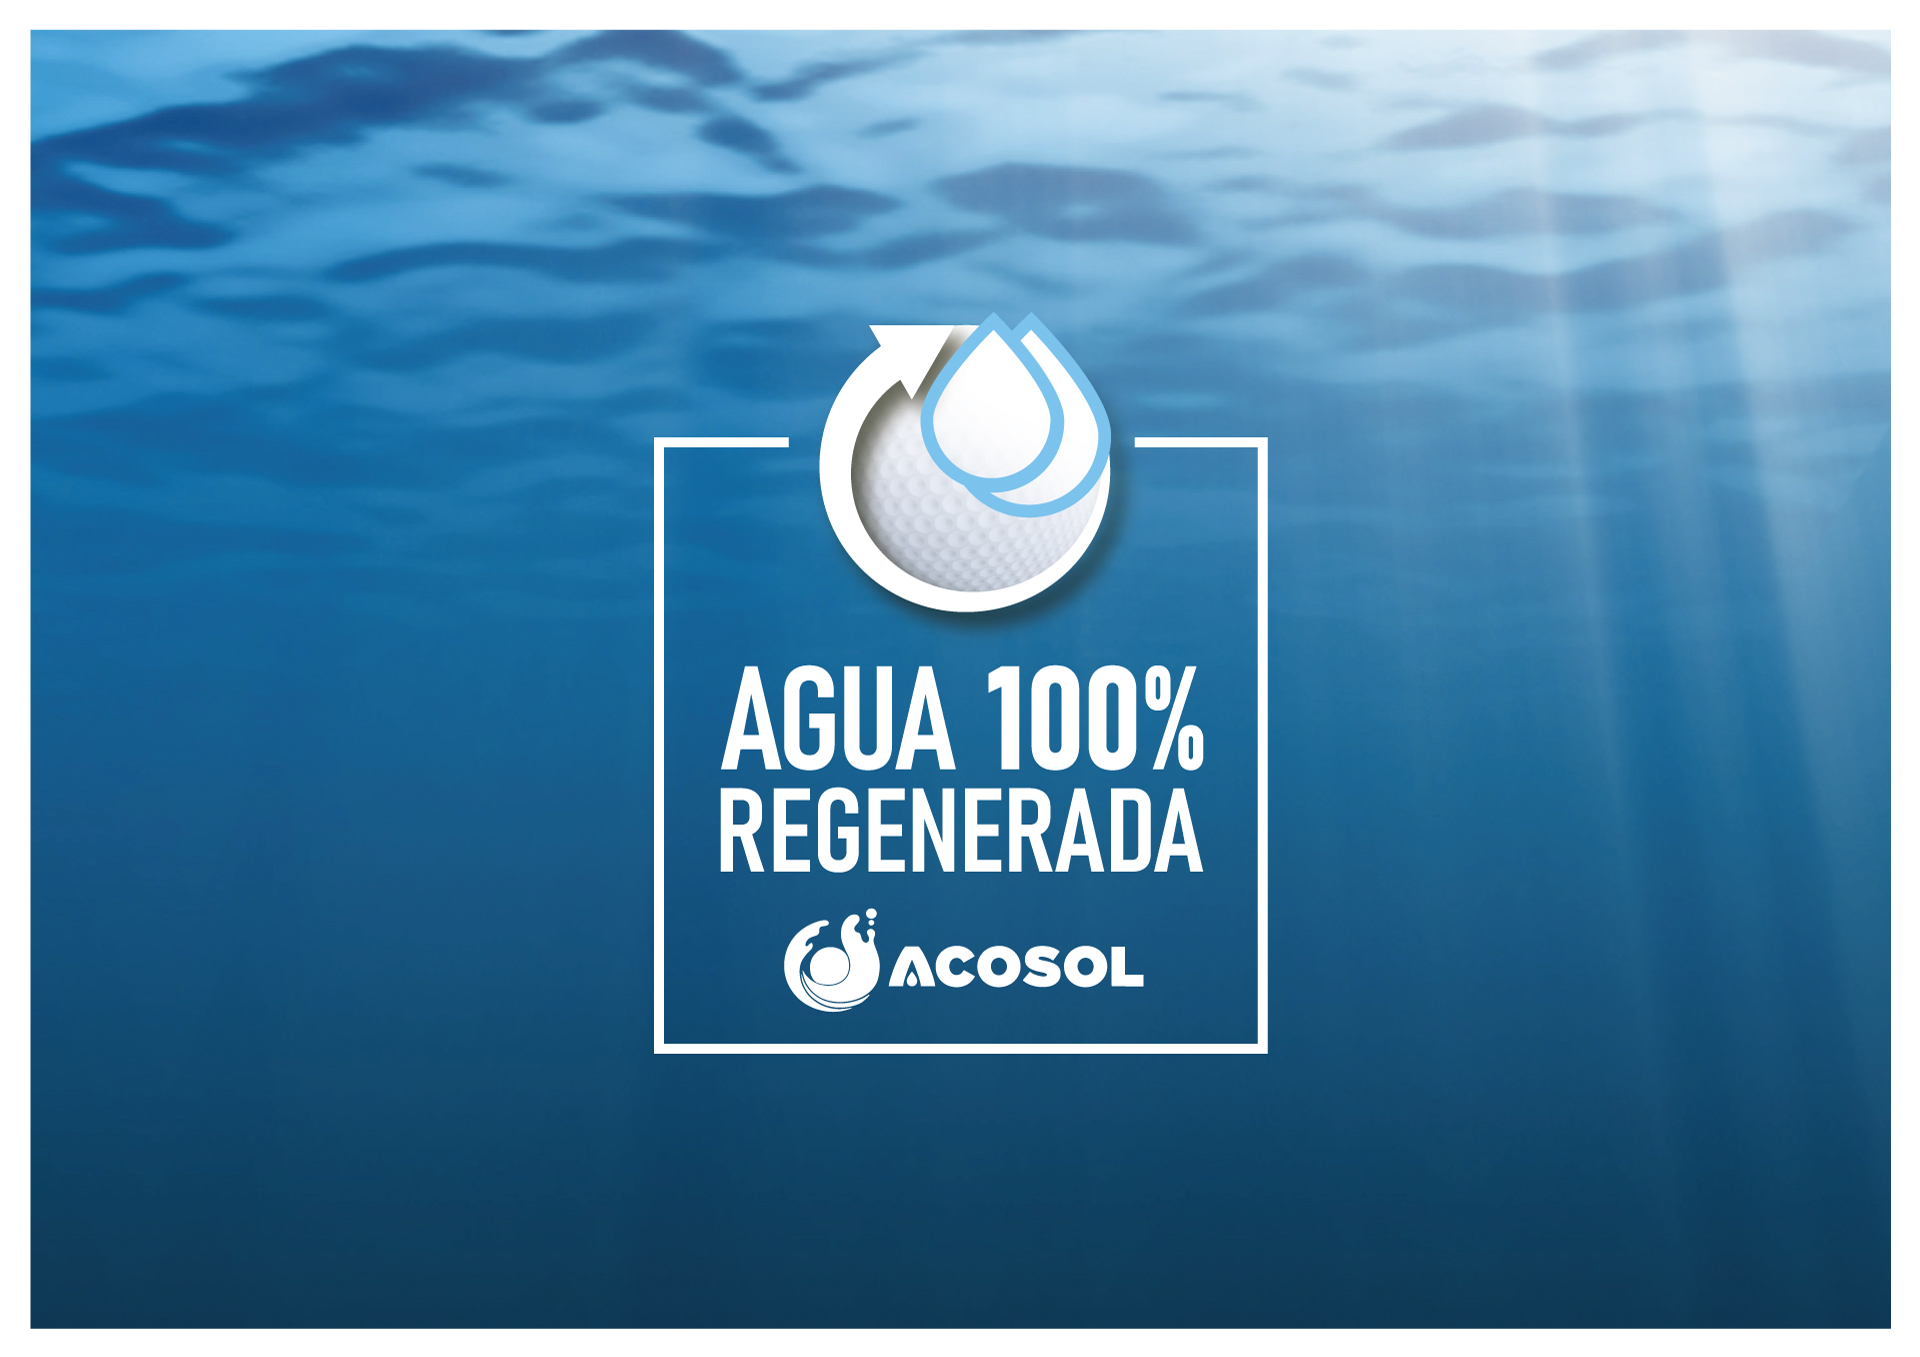 Diseño Imagen Sello Acosol Agua 100% Reciclada